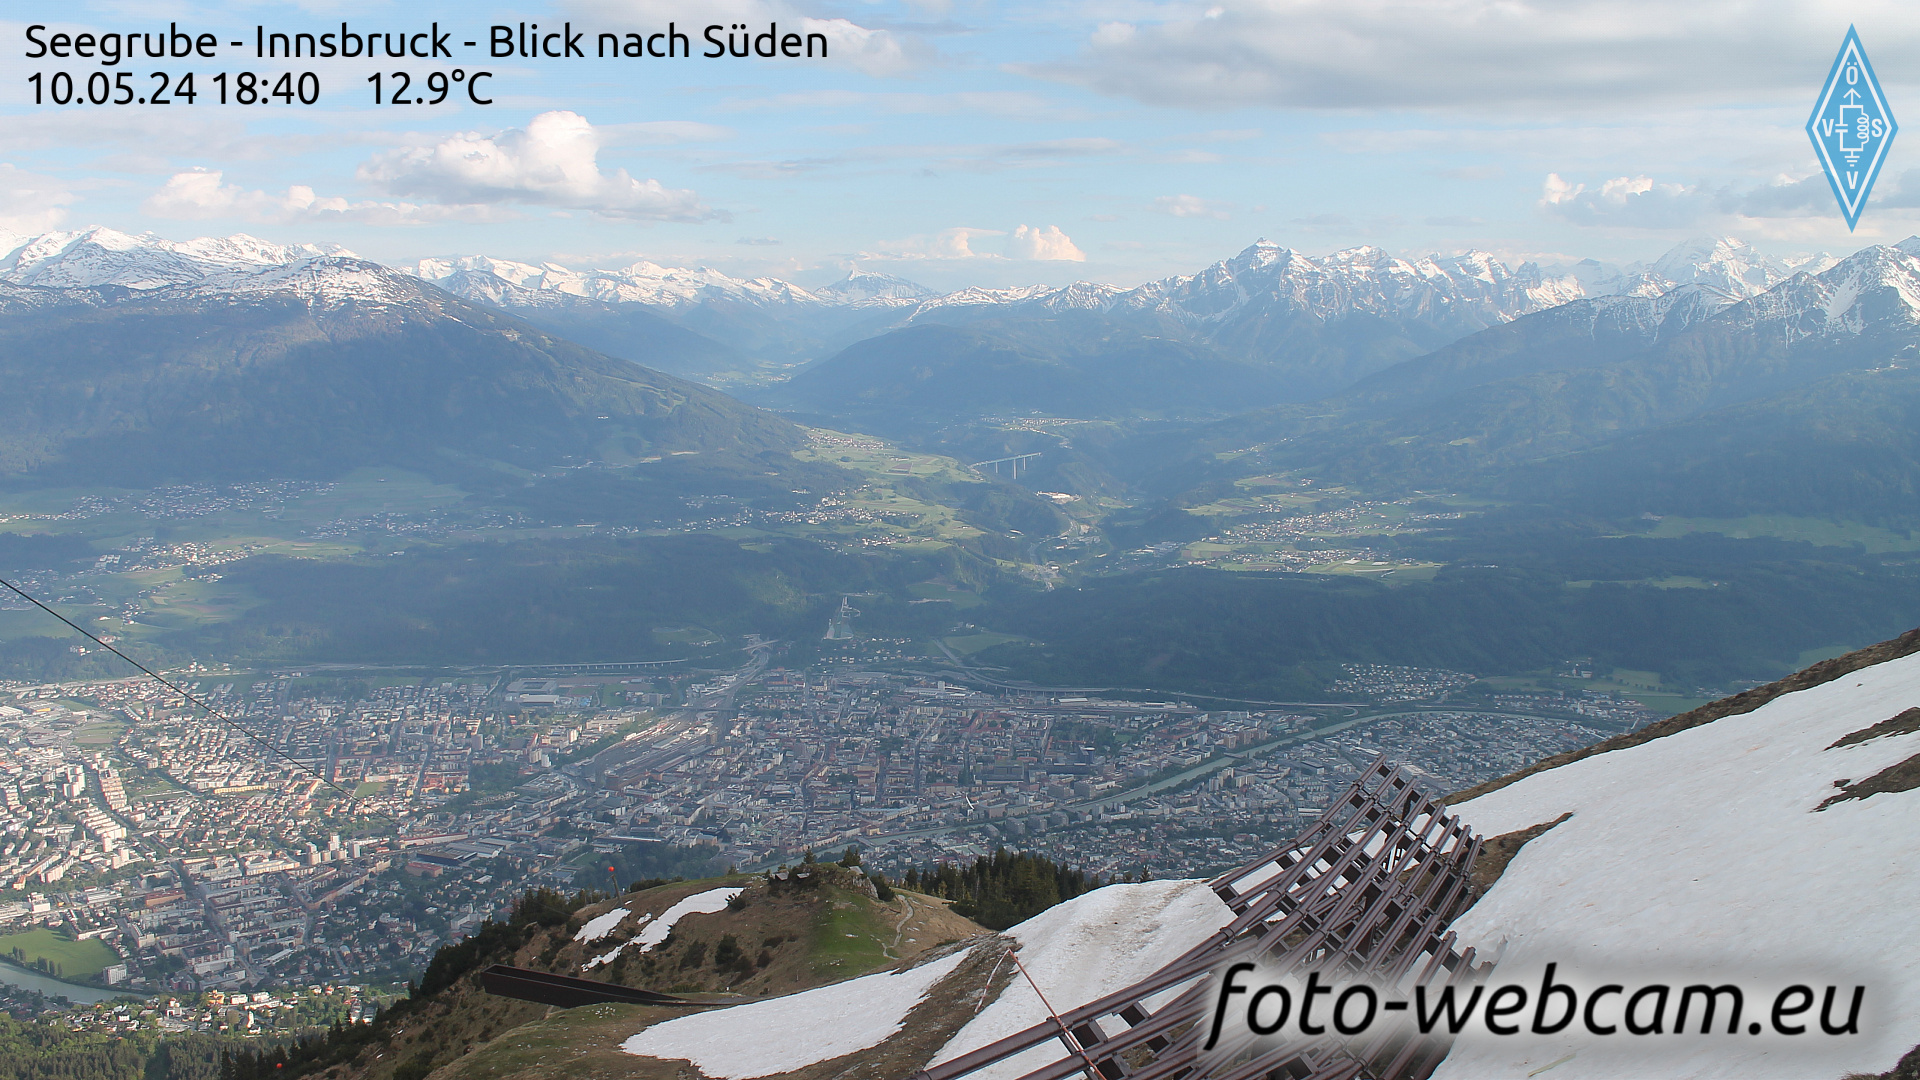 Innsbruck Di. 18:48